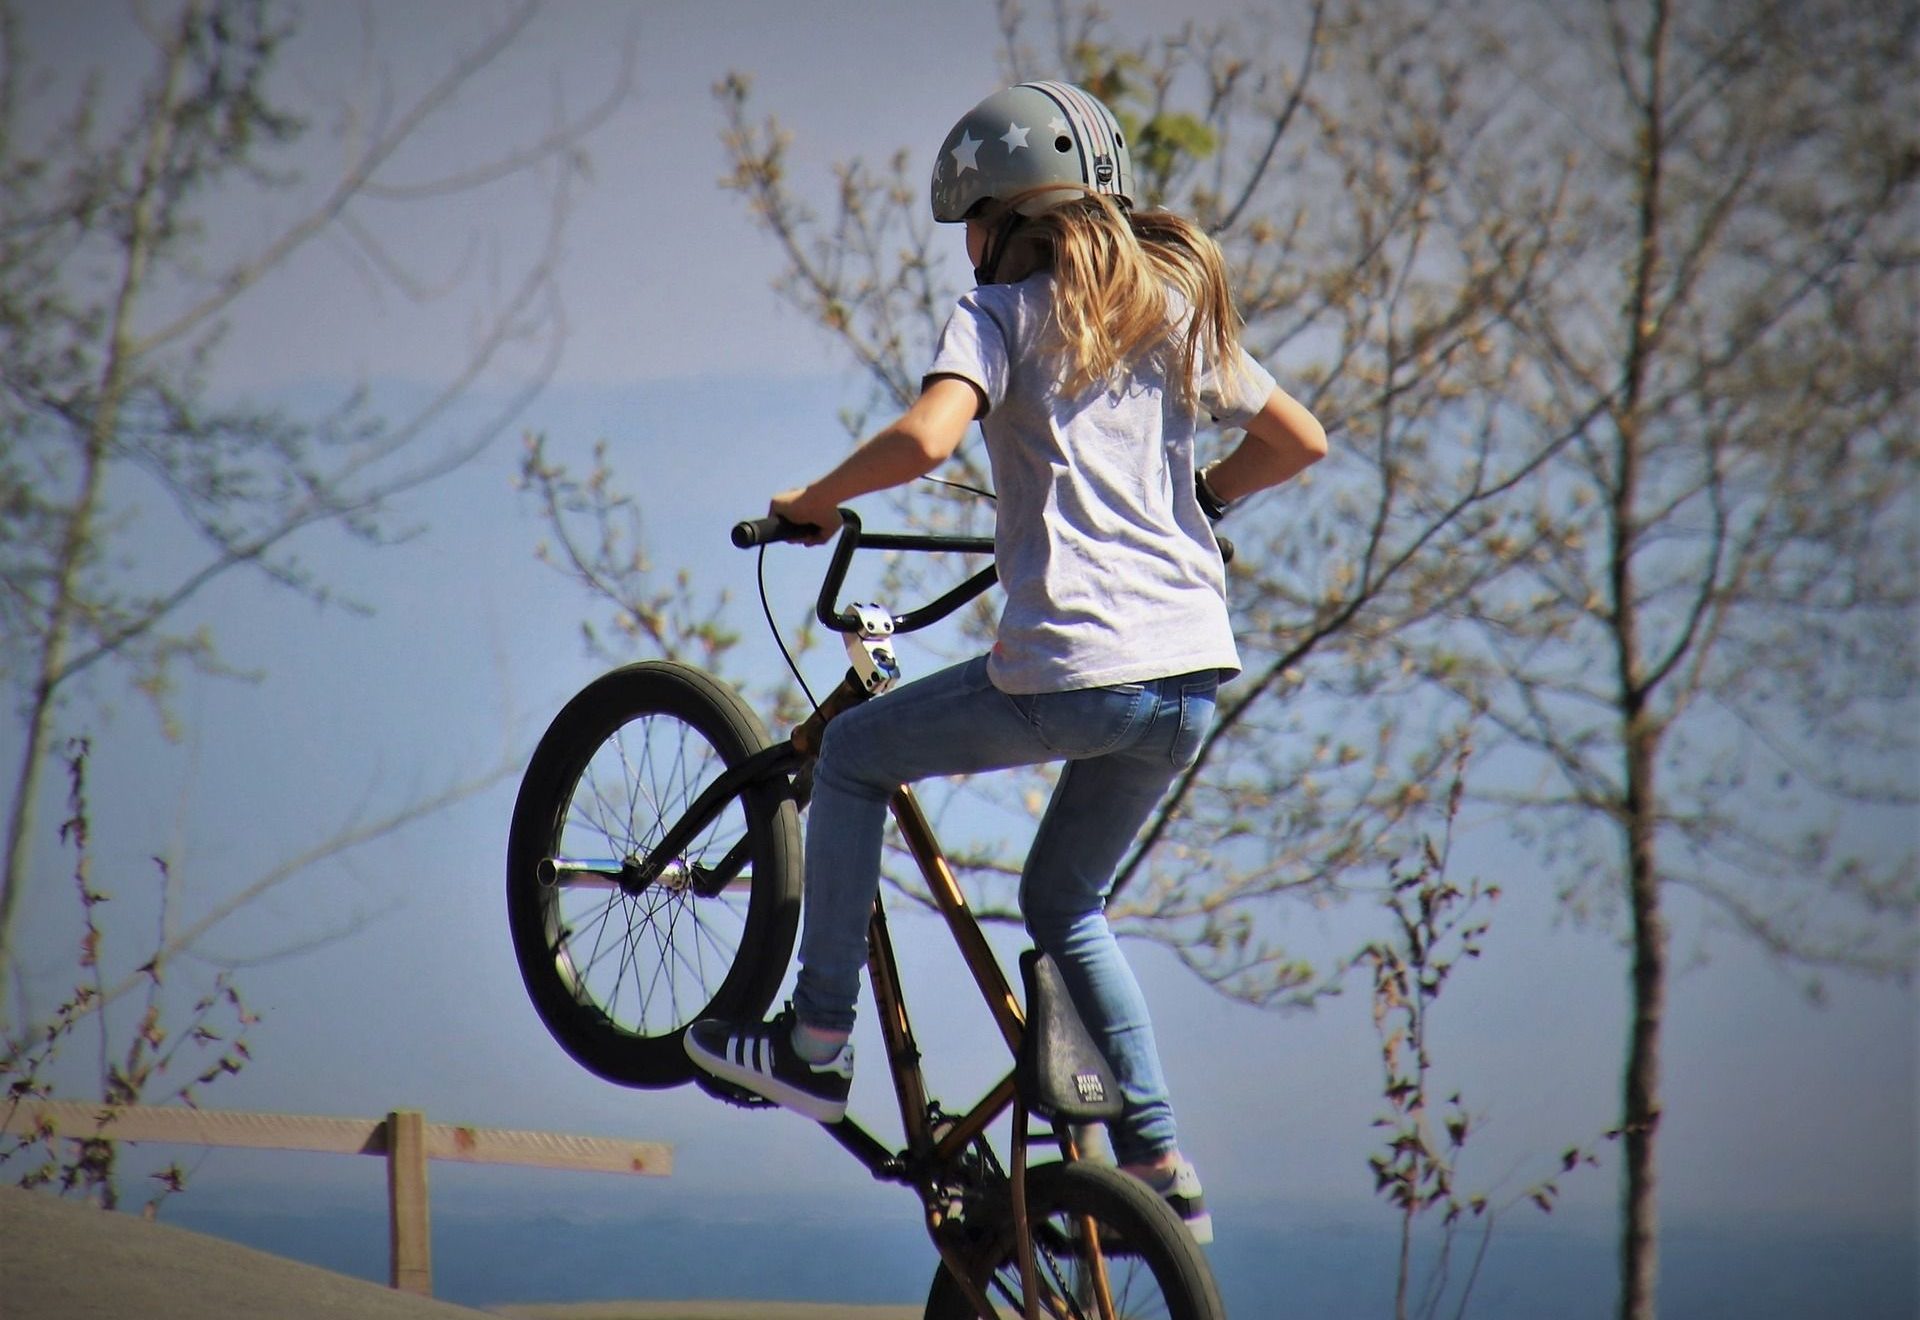 Mädchen mti Helm auf einem BMX-Rad in der Luft.